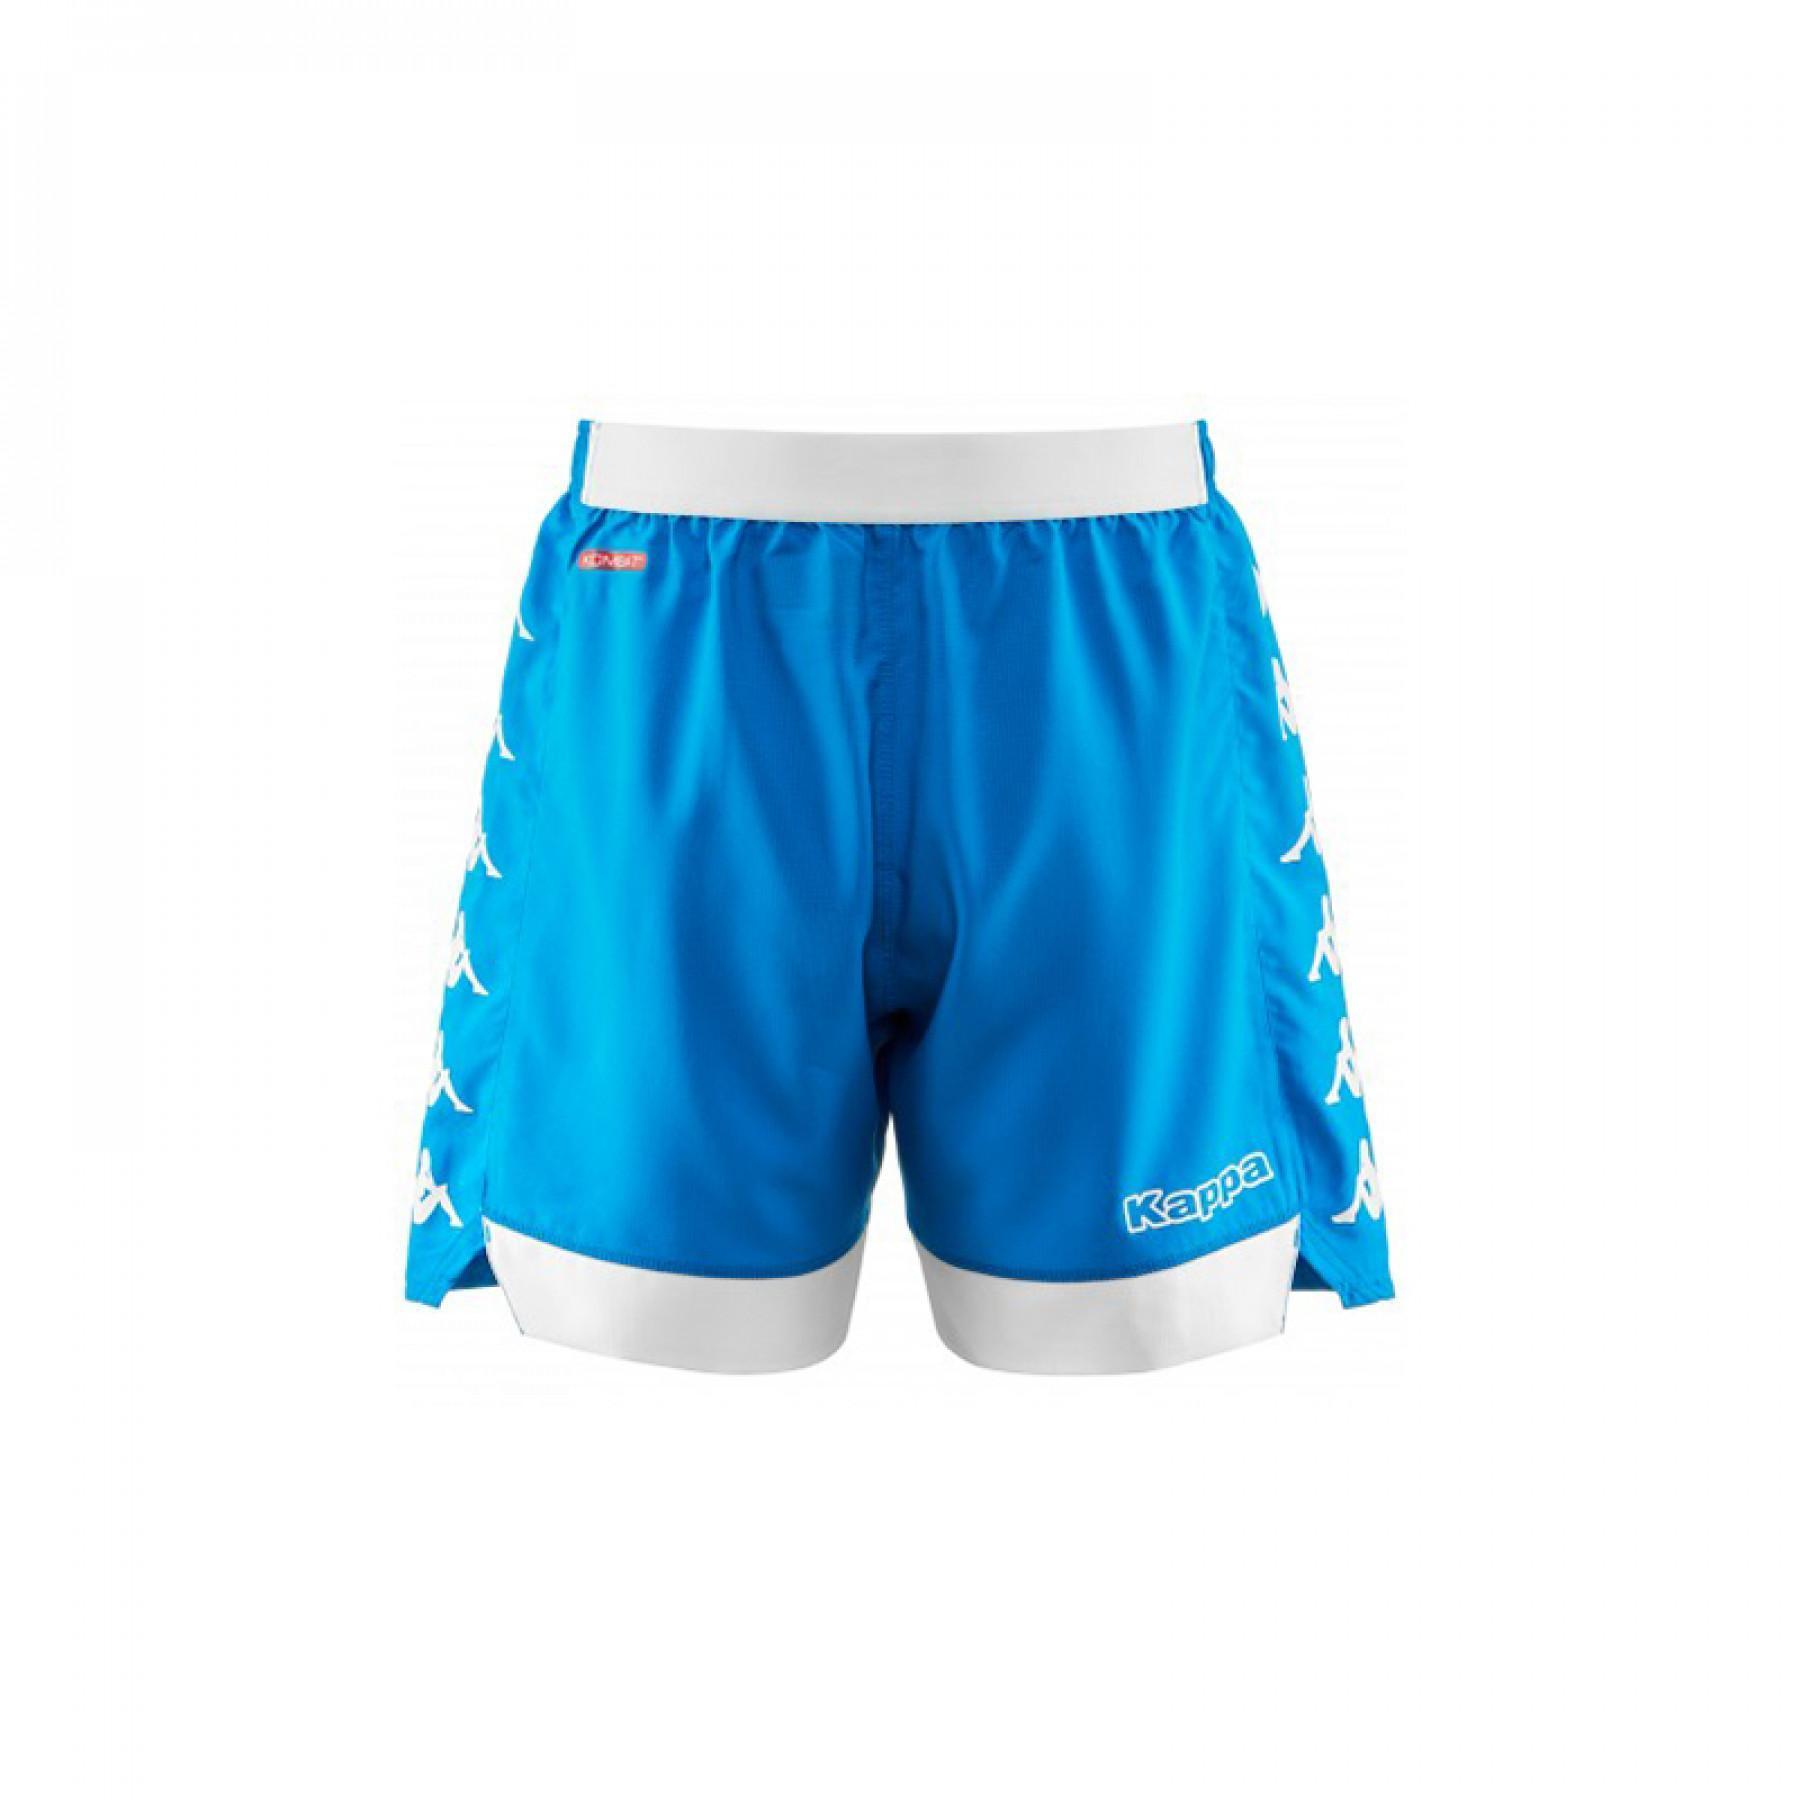 Home shorts SSC Napoli bleu 2018/19